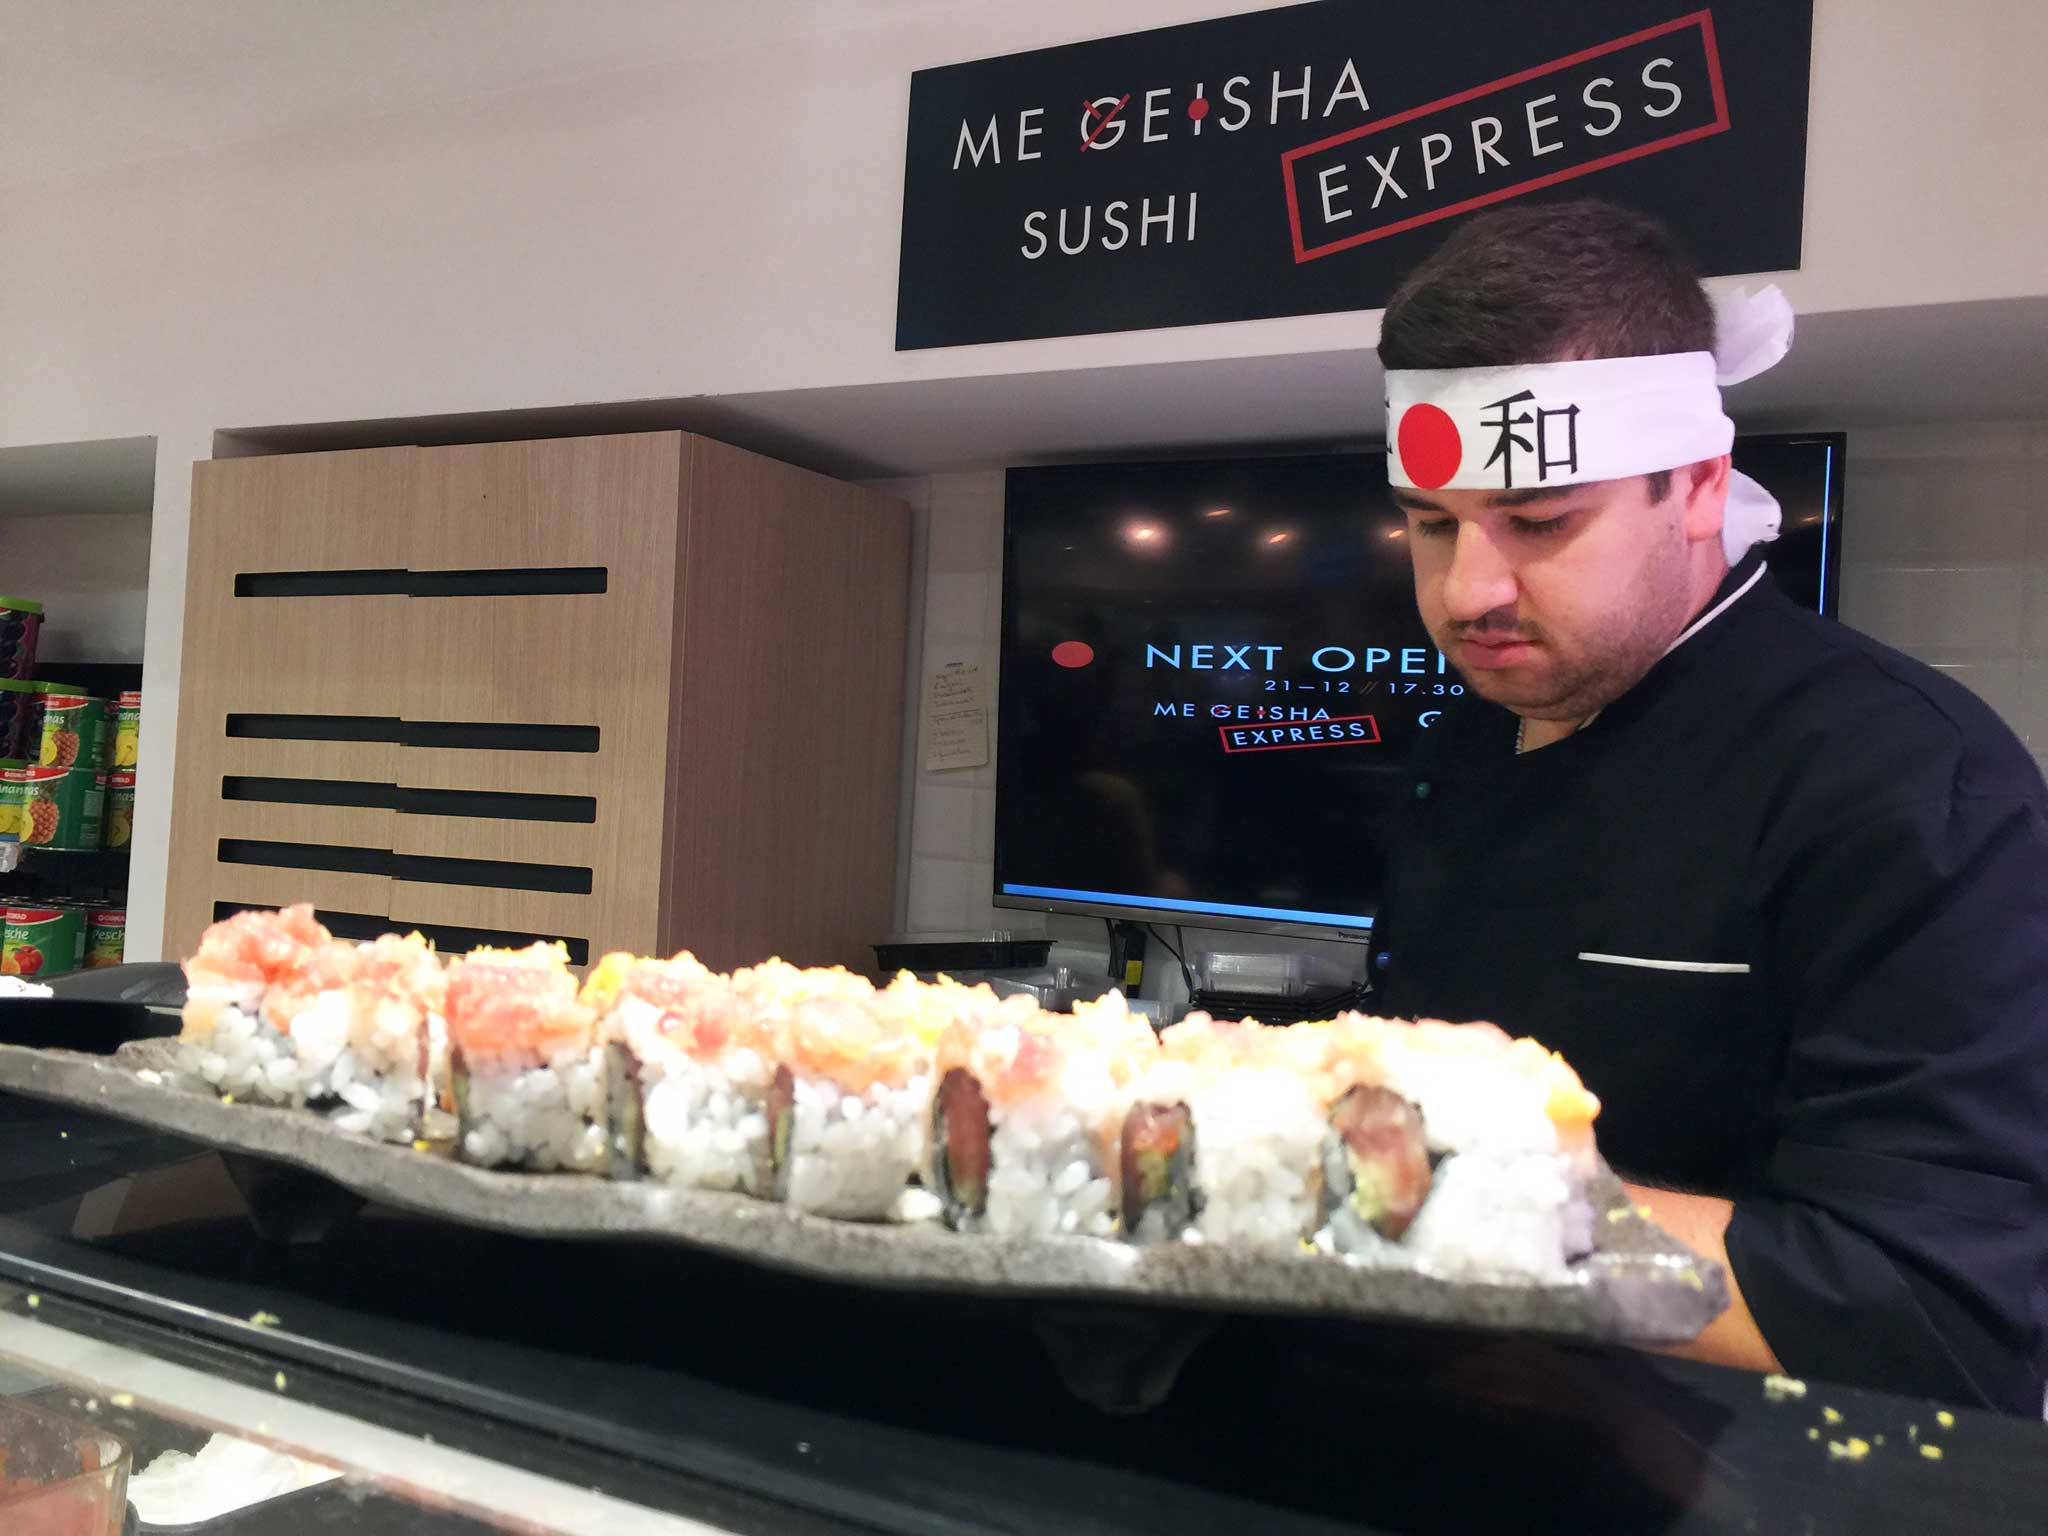 Me Geisha sushi Napoli